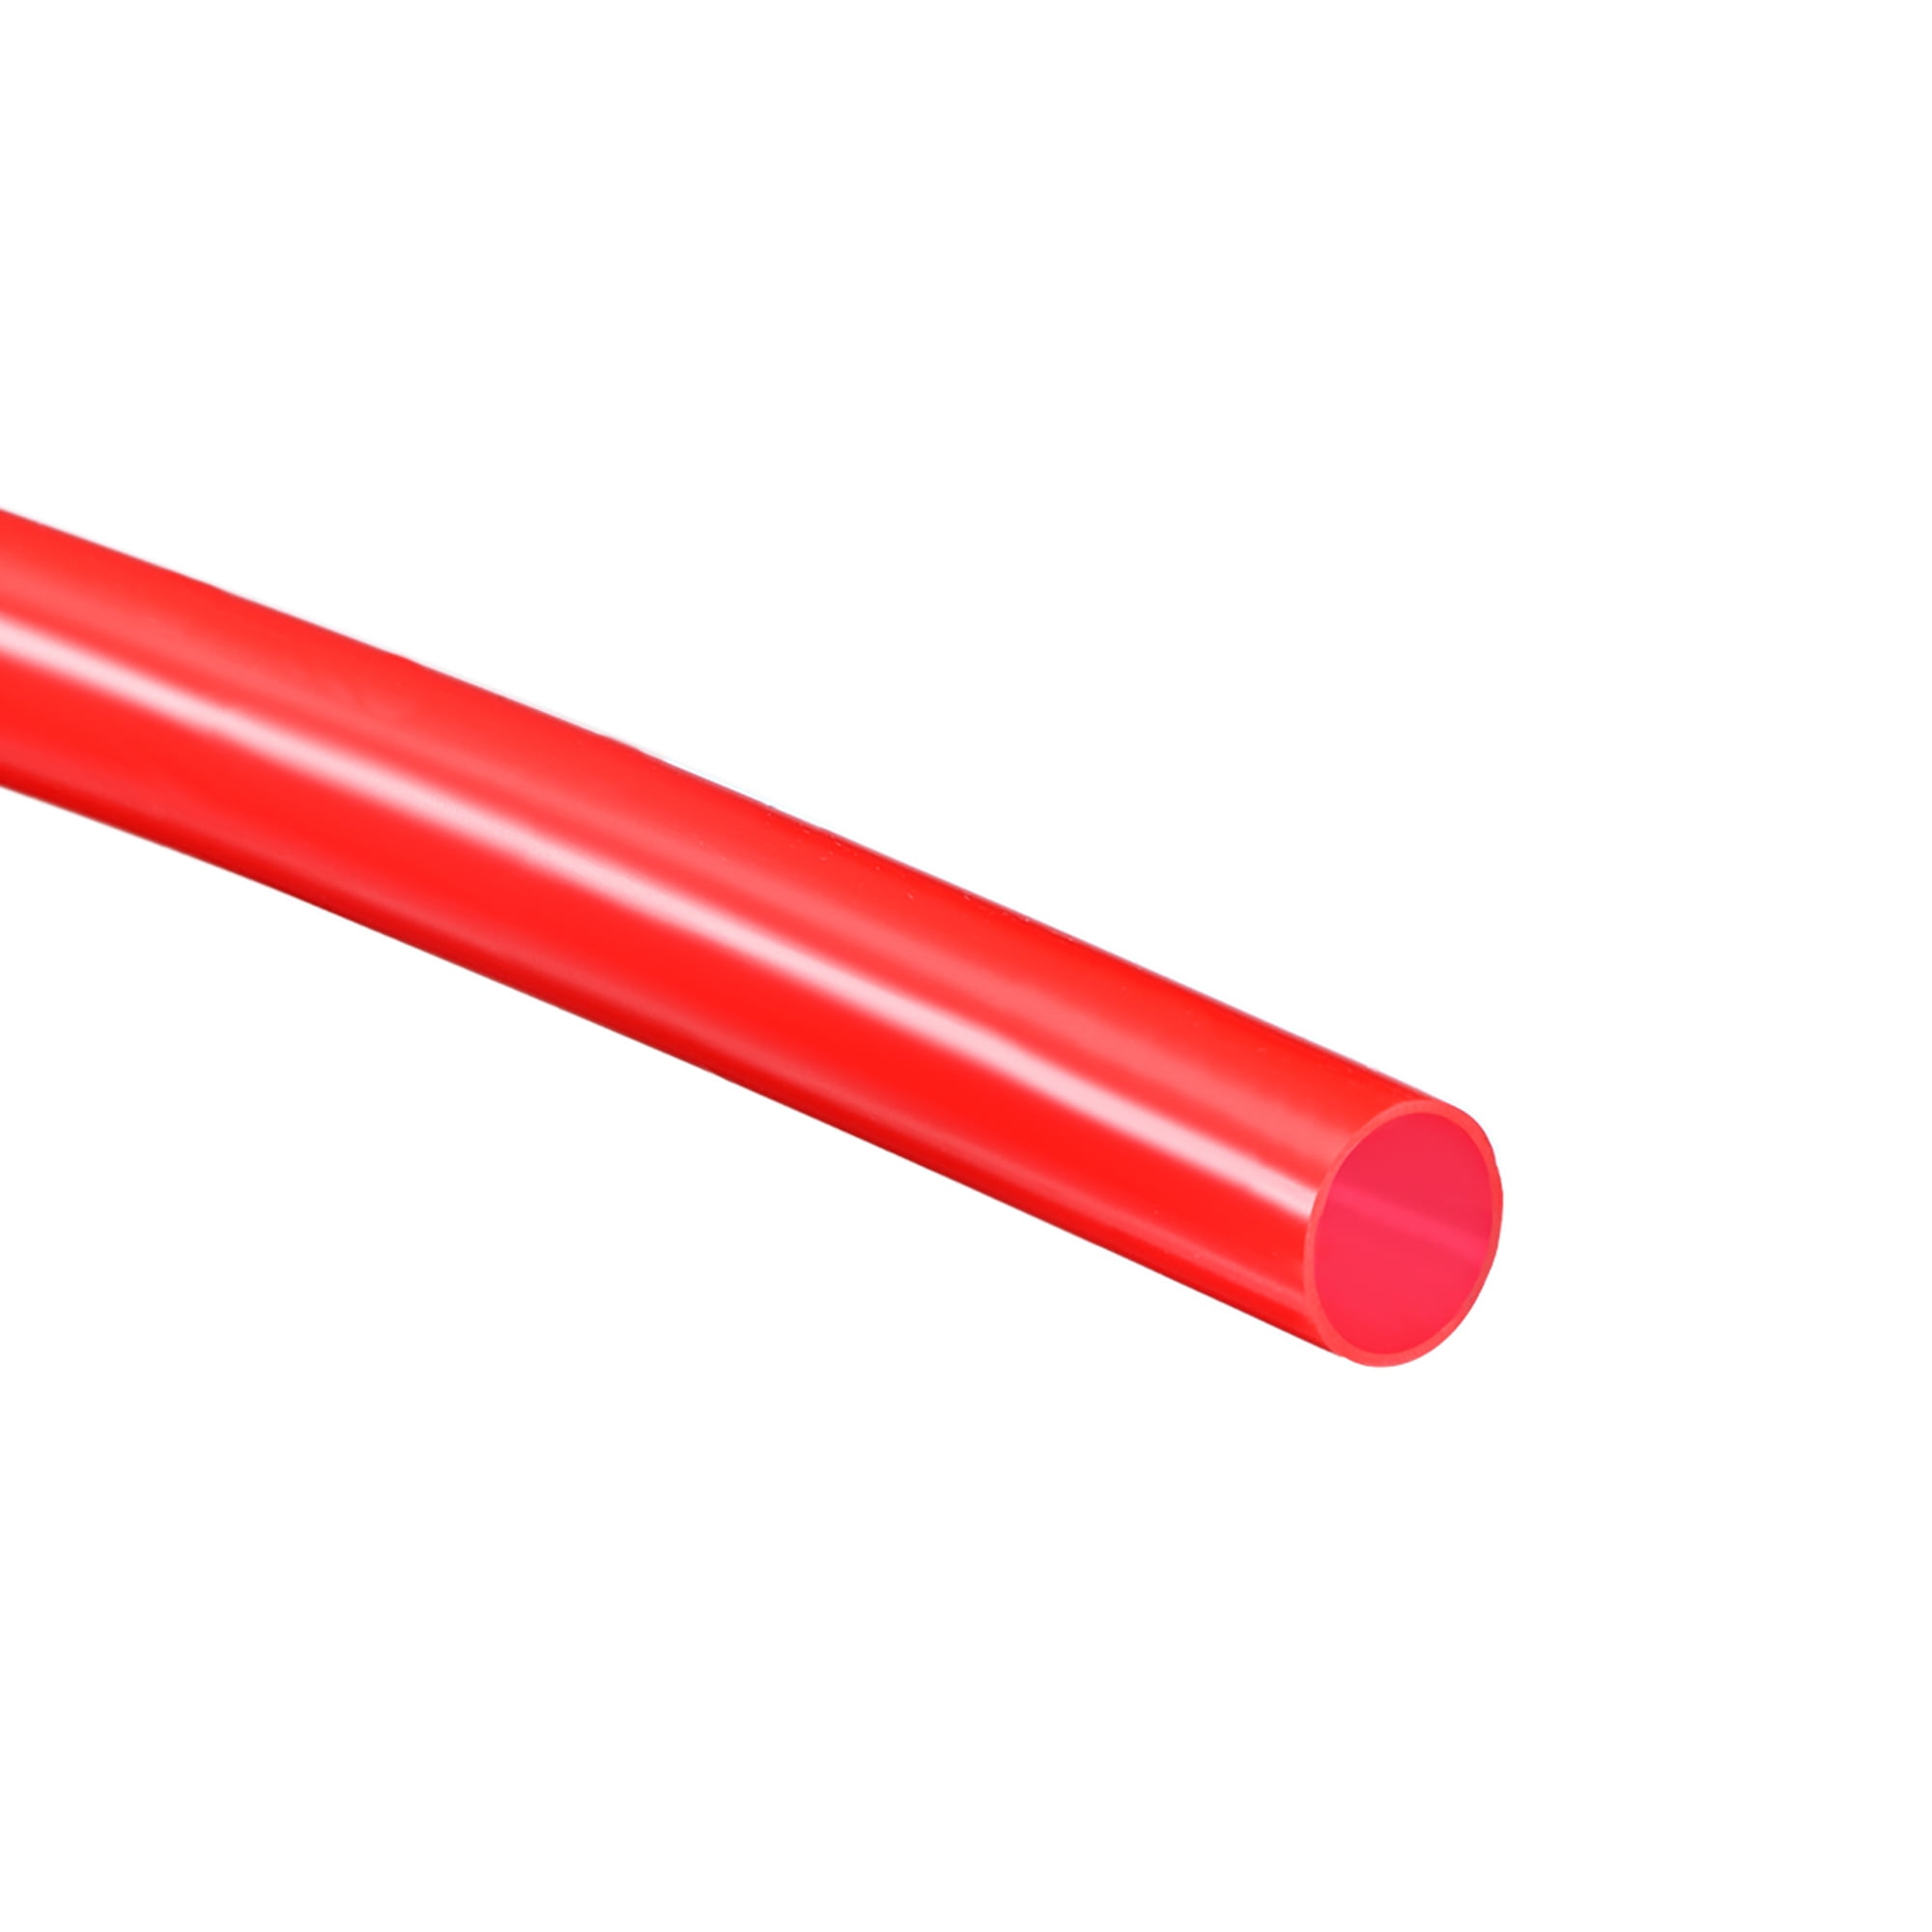 Красная трубочка. Резиновая трубка. 10 Метров красная трубка. Силиконовый сливной шланг. Тонкая трубочка резиновая для помпы.